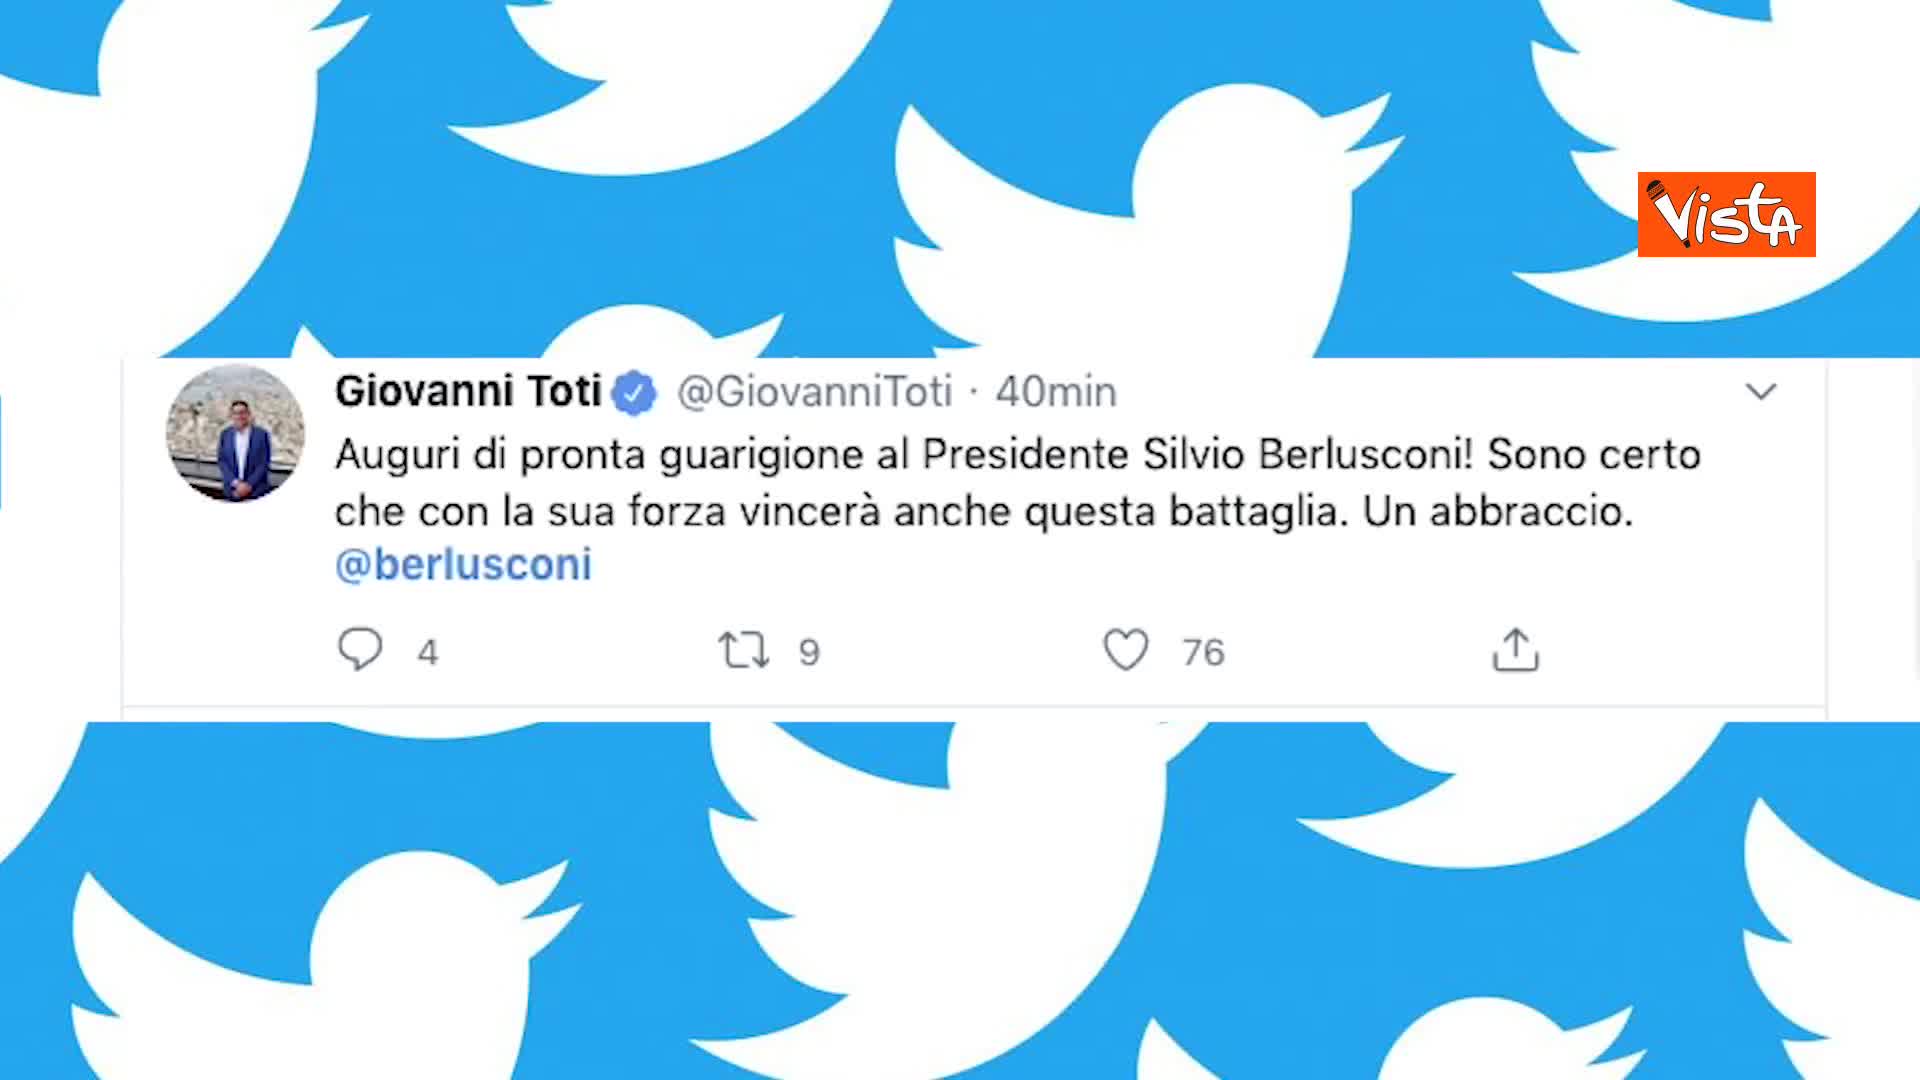 Berlusconi Positivo Al Covid Gli Auguri Di Pronta Guarigione Da Alleati E Avversari Su Twitter Milano